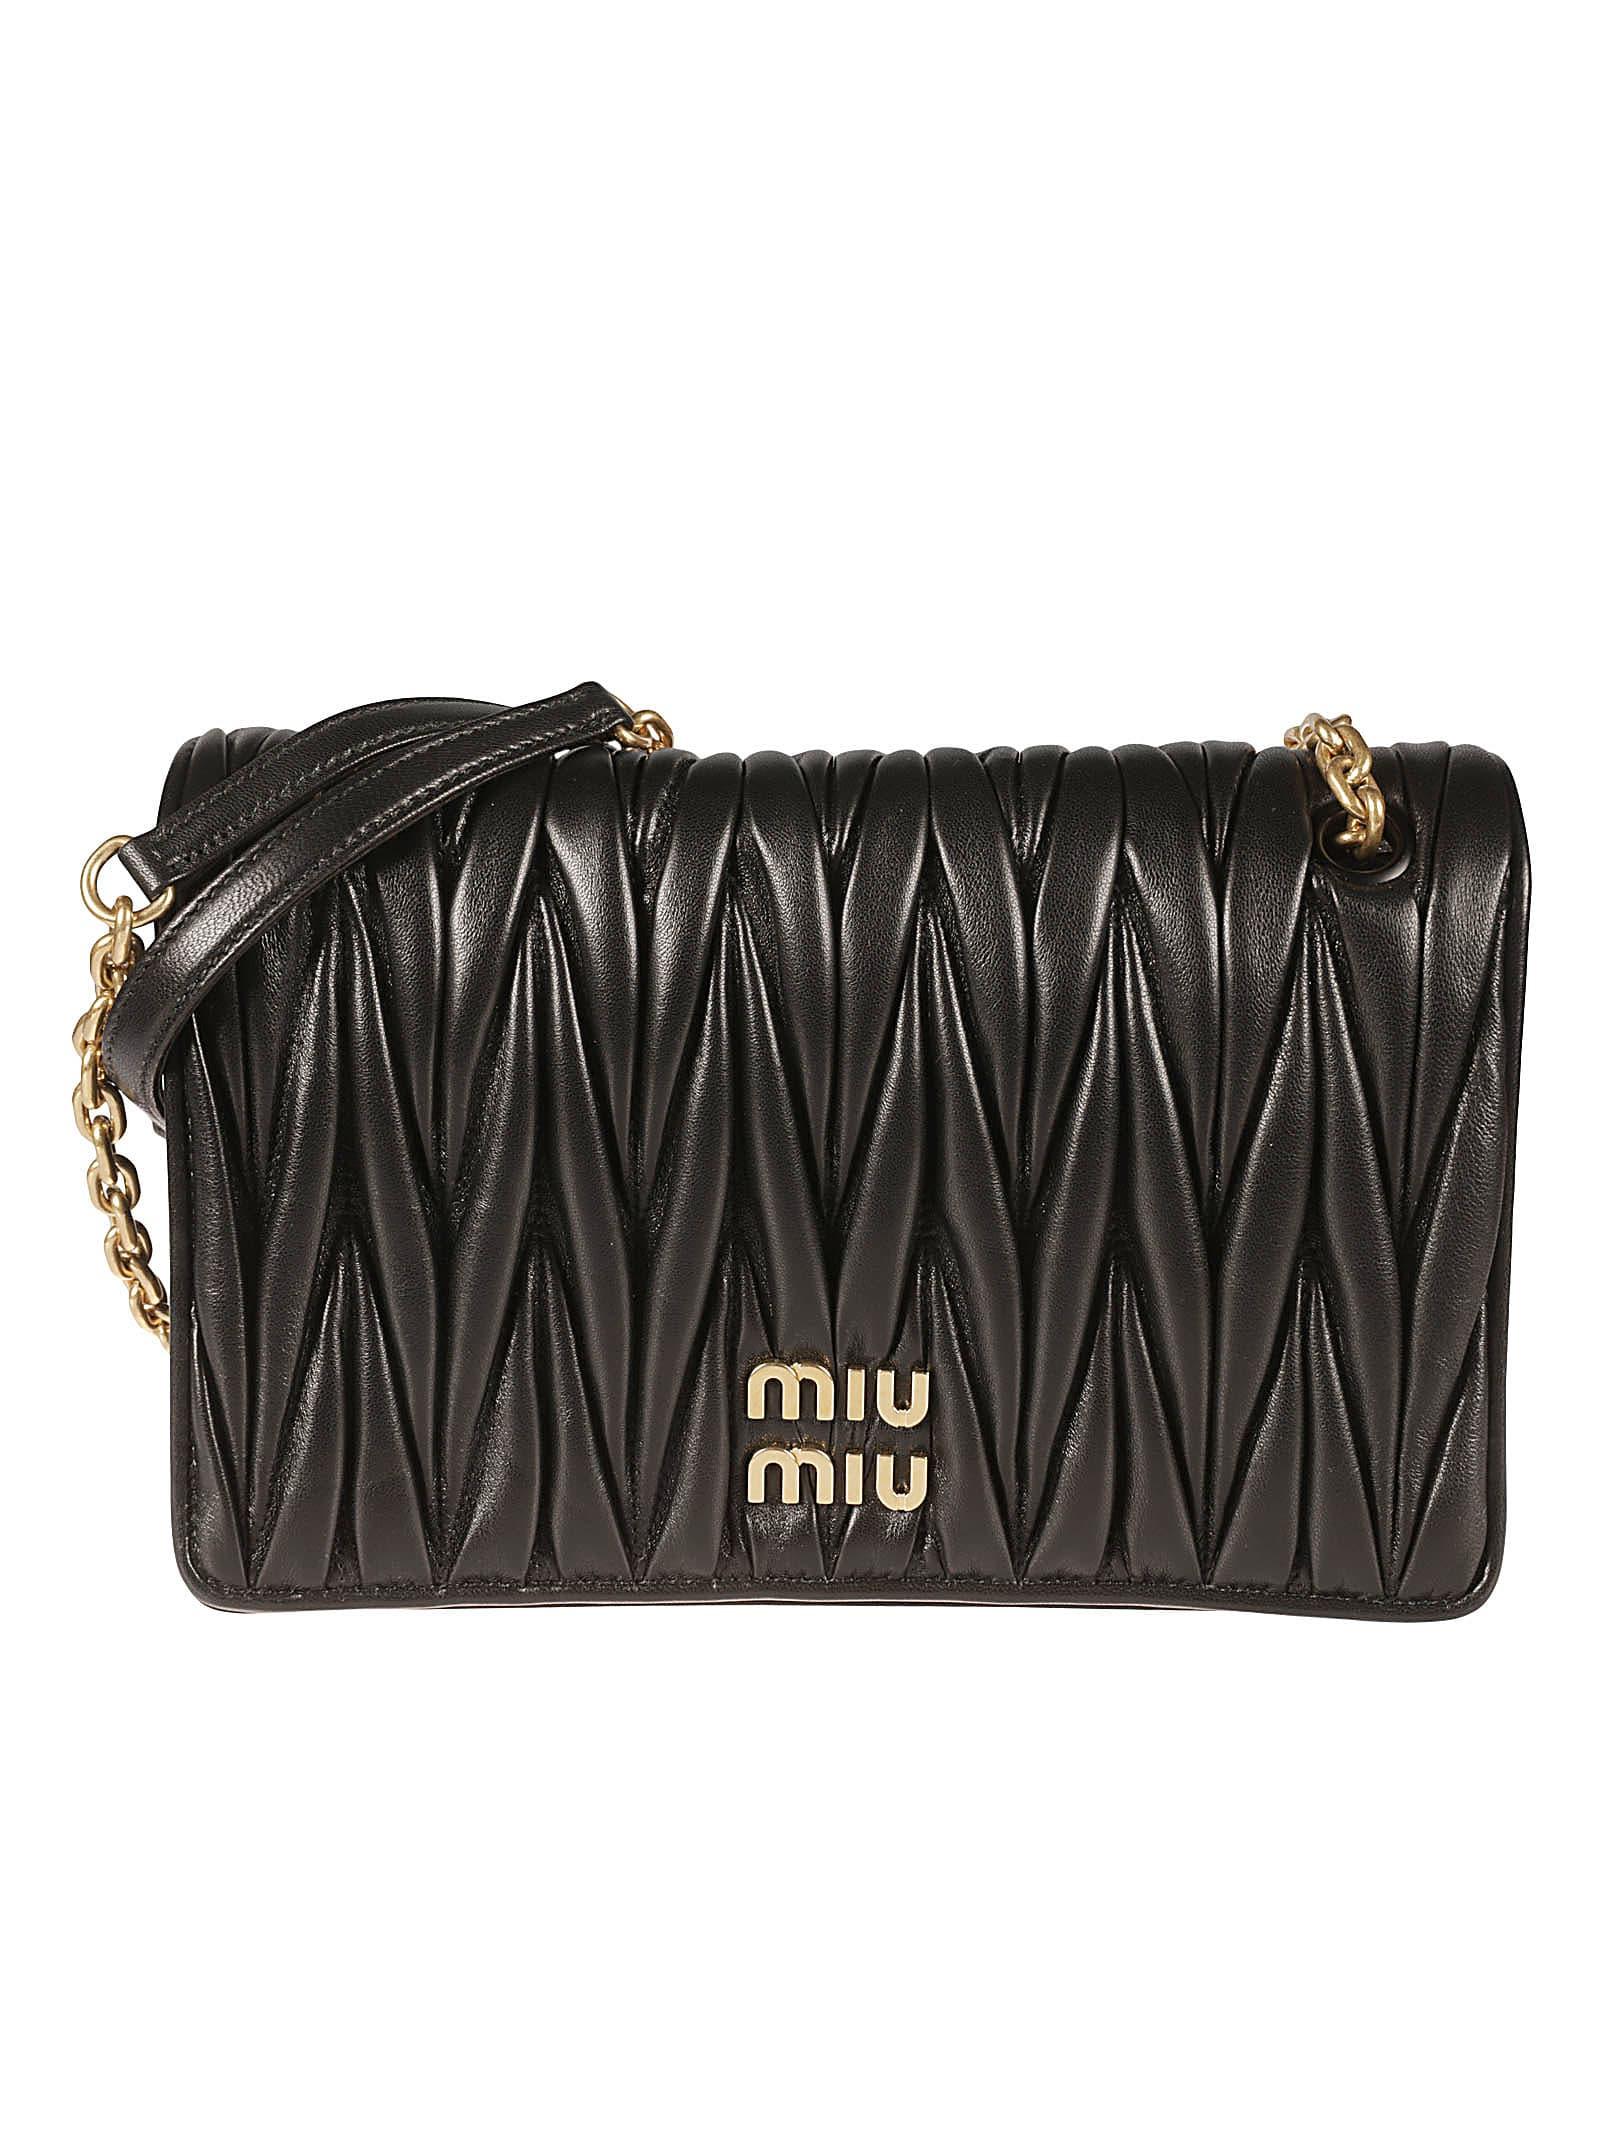 Miu Miu Matelassé Shoulder Bag in Black | Lyst